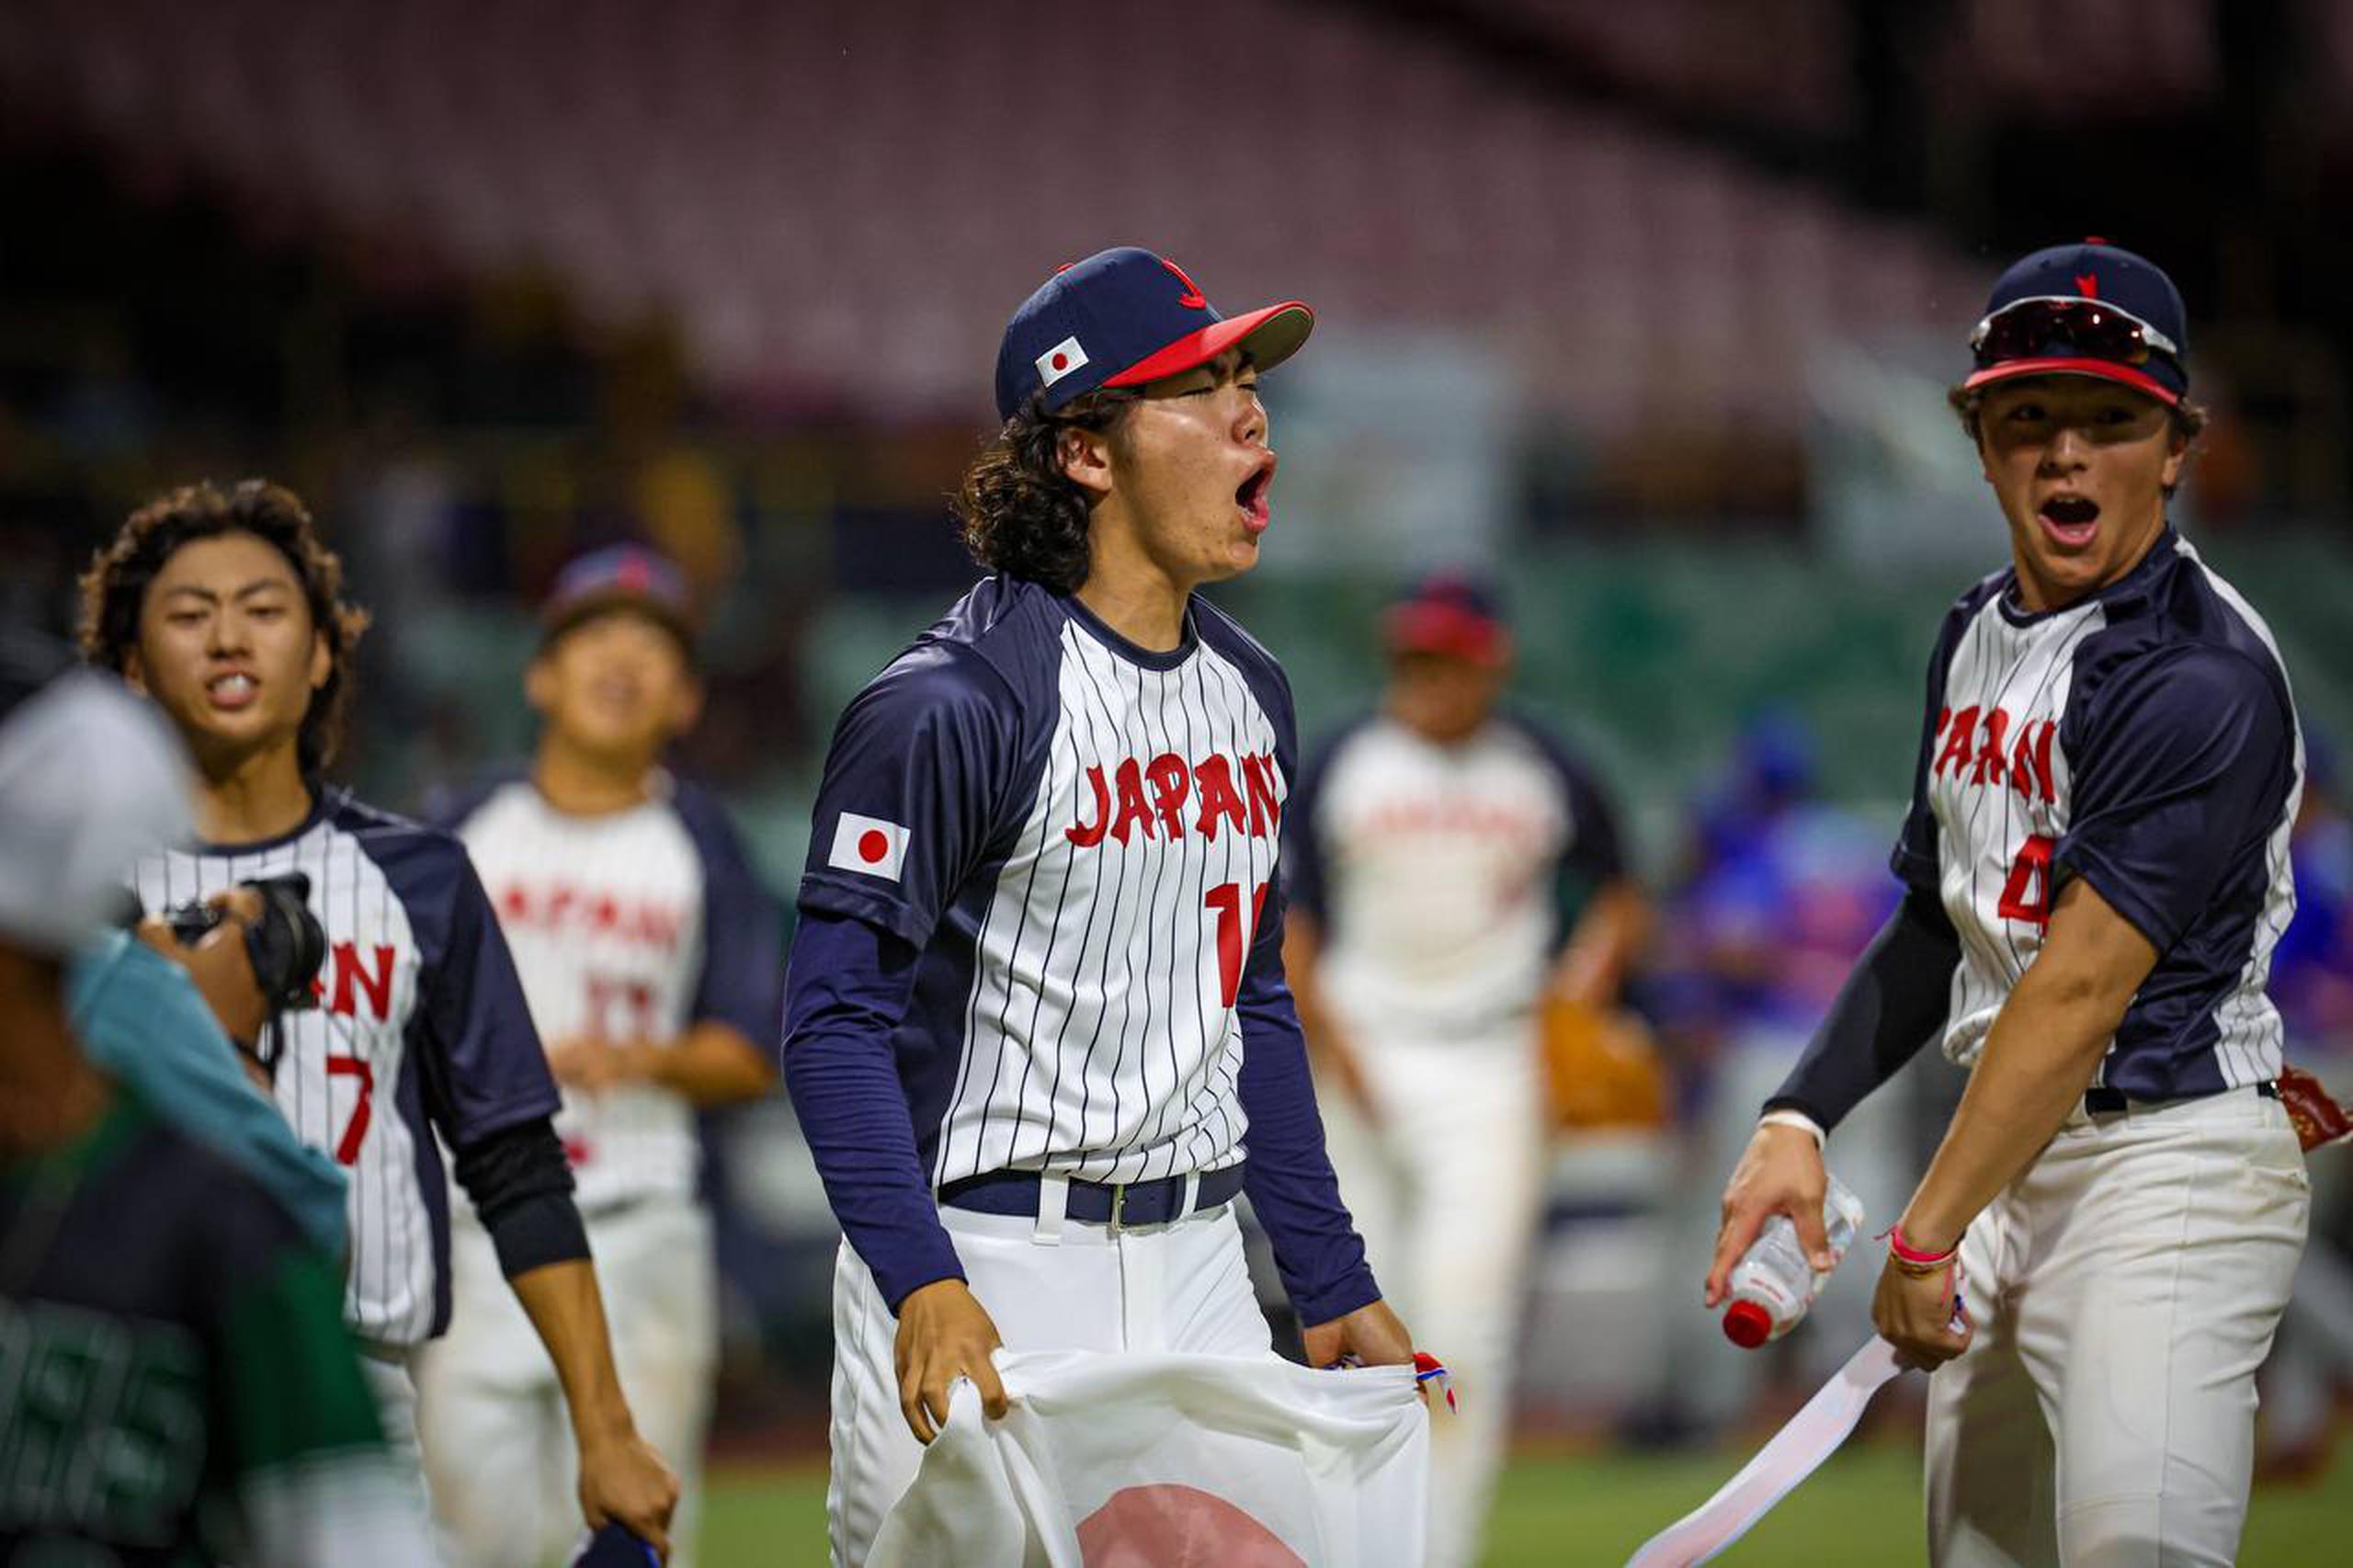 Jugadores de Japón celebran la victoria sobre Puerto Rico en base a diferencia de imparable luego de un partido que finalizó empatado a 4-4 en carreras.